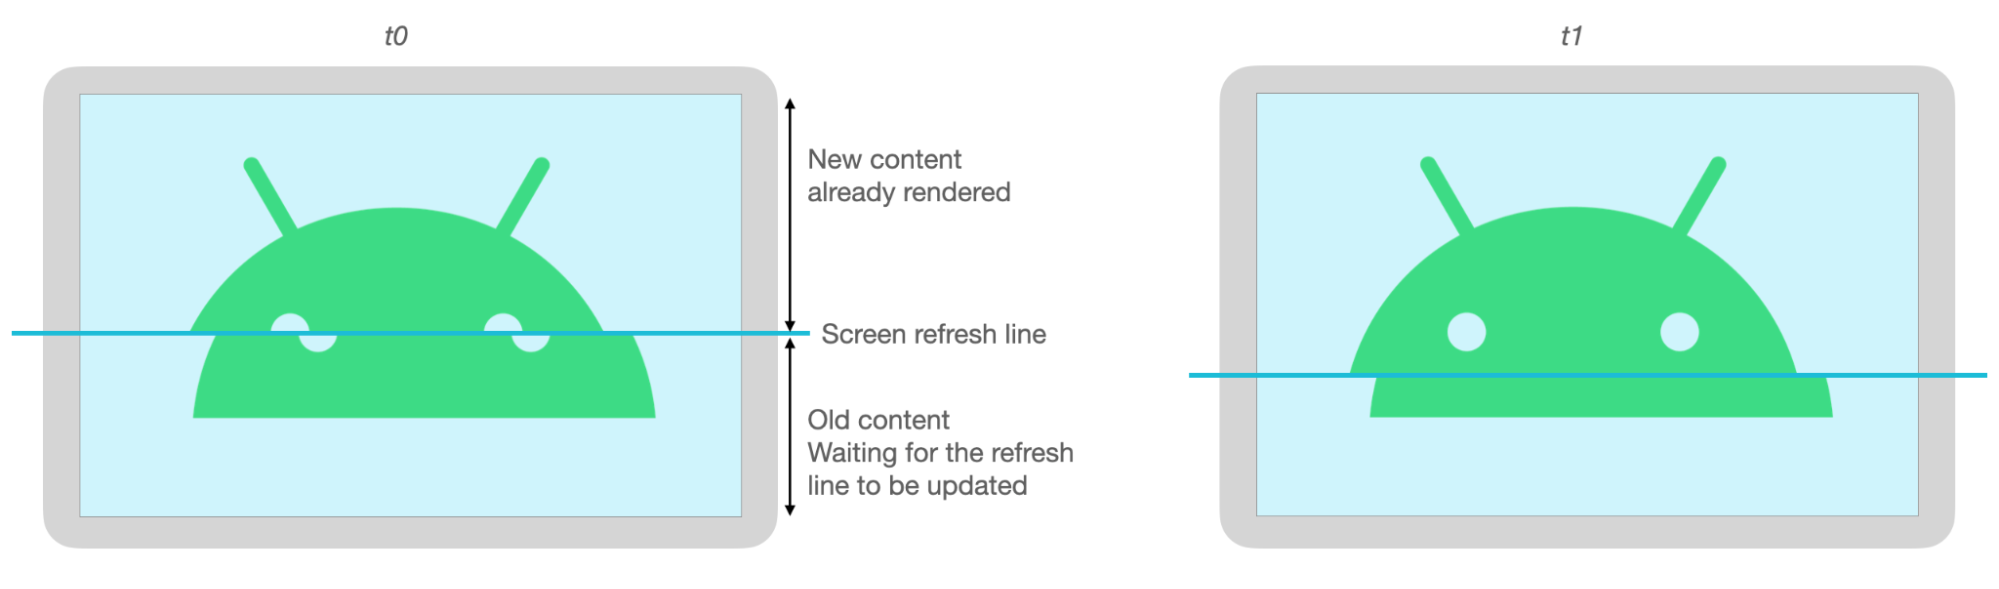 Las partes inferior y superior de la imagen de Android no están alineadas debido al seccionamiento cuando se actualiza la pantalla.